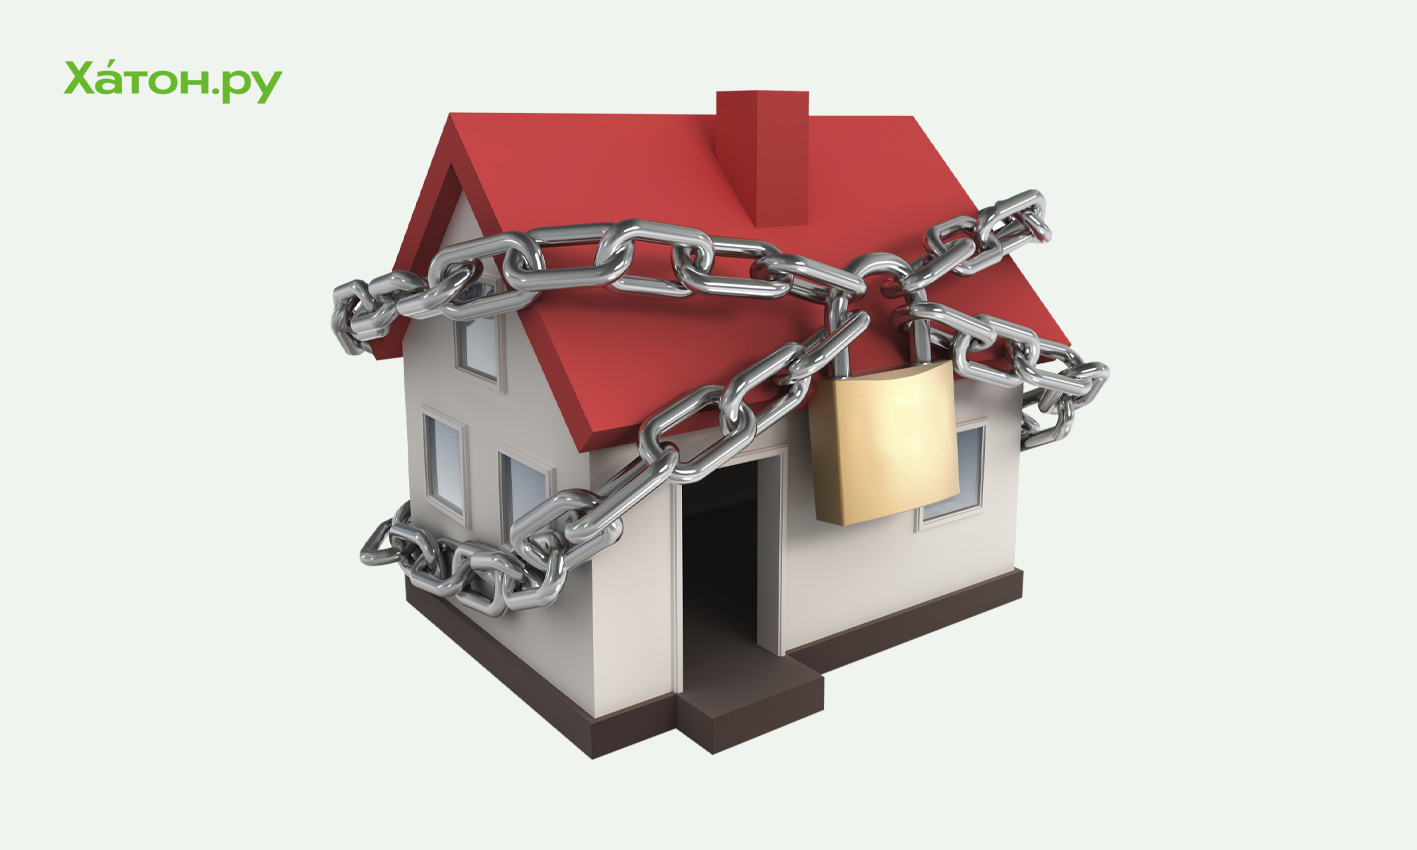 Раскрыто будущее российских цен на недвижимость: ипотека может стать недоступной